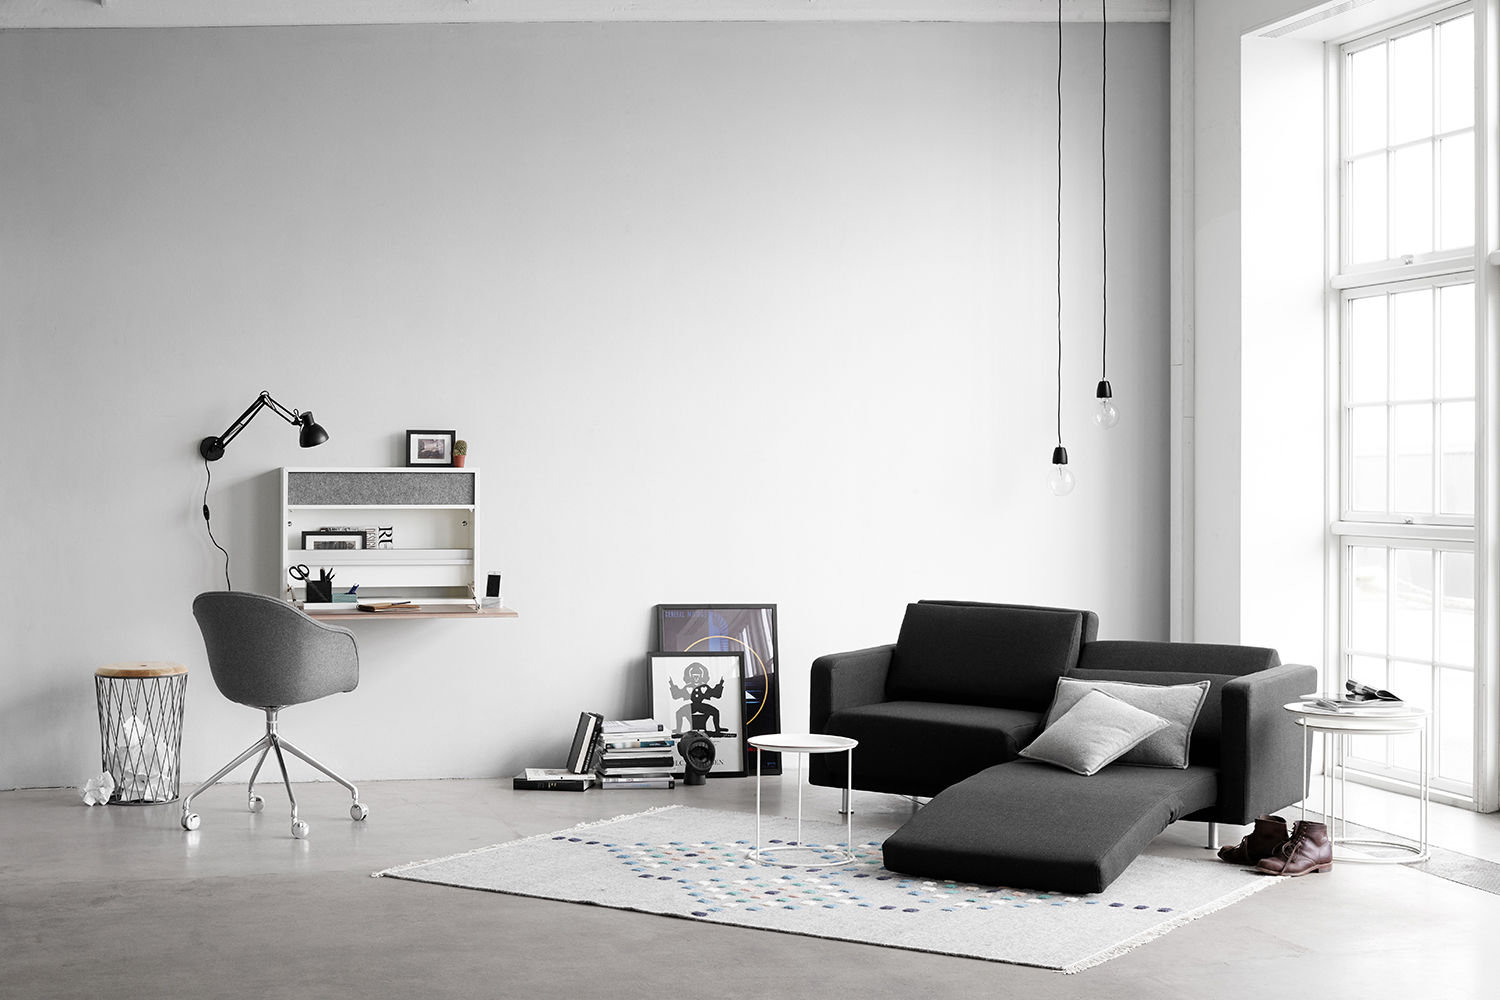 スペースをつくる機能家具, 株式会社ボーコンセプト・ジャパン 株式会社ボーコンセプト・ジャパン Living room Sofas & armchairs